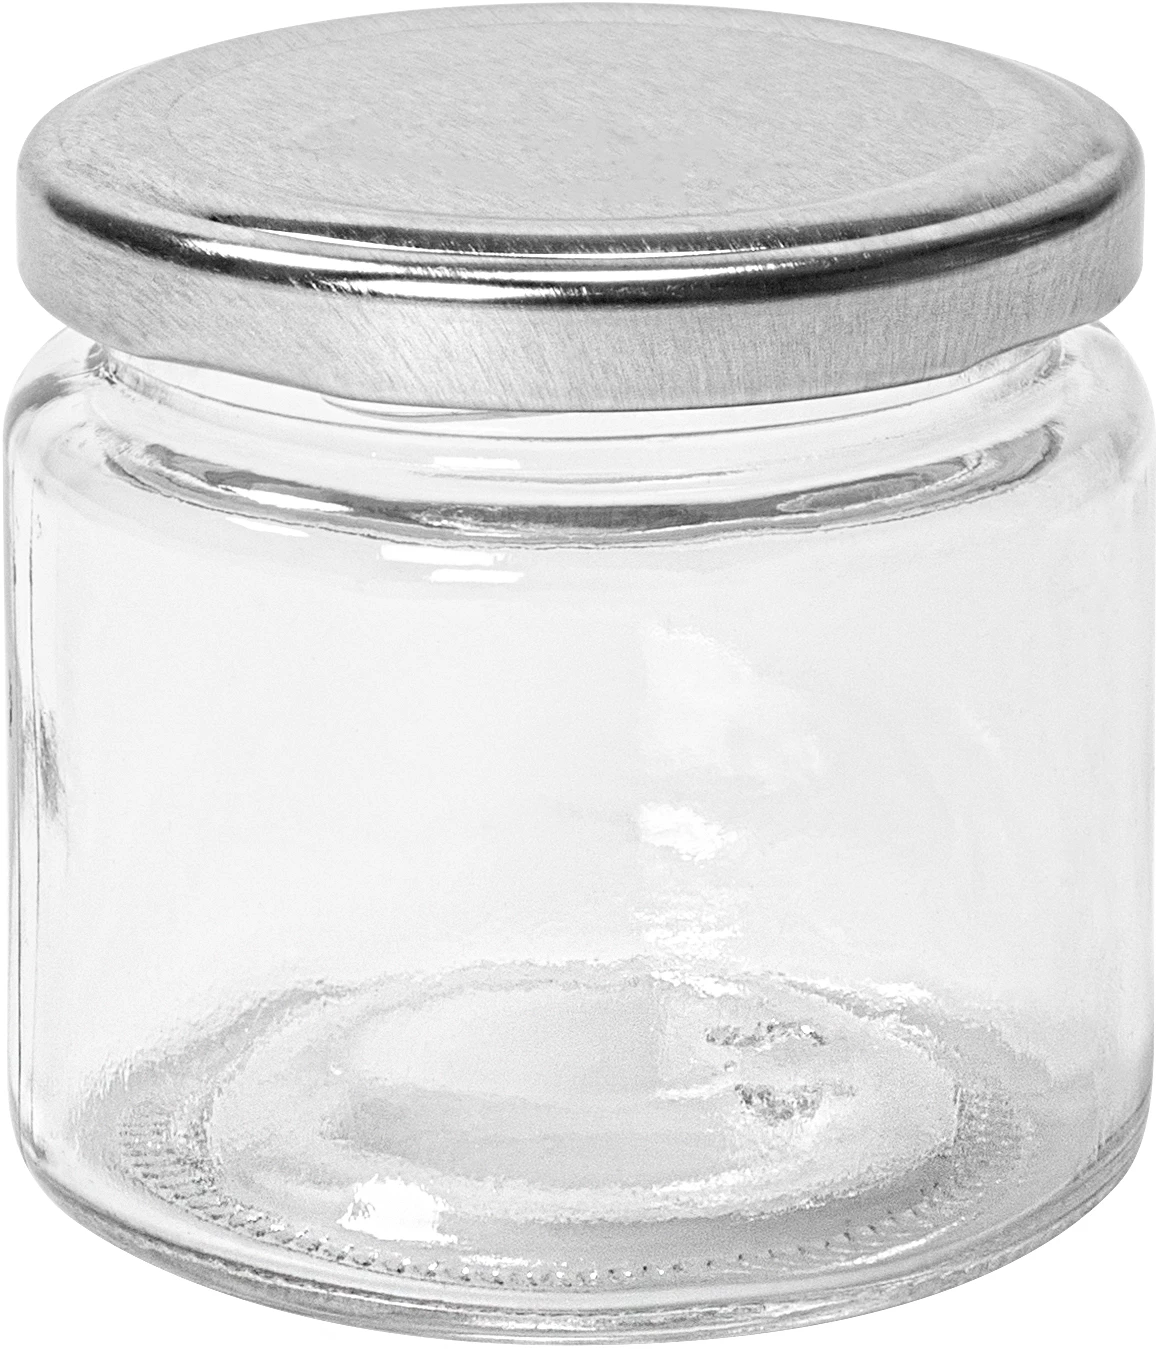 Serveringsburk glas 15cl